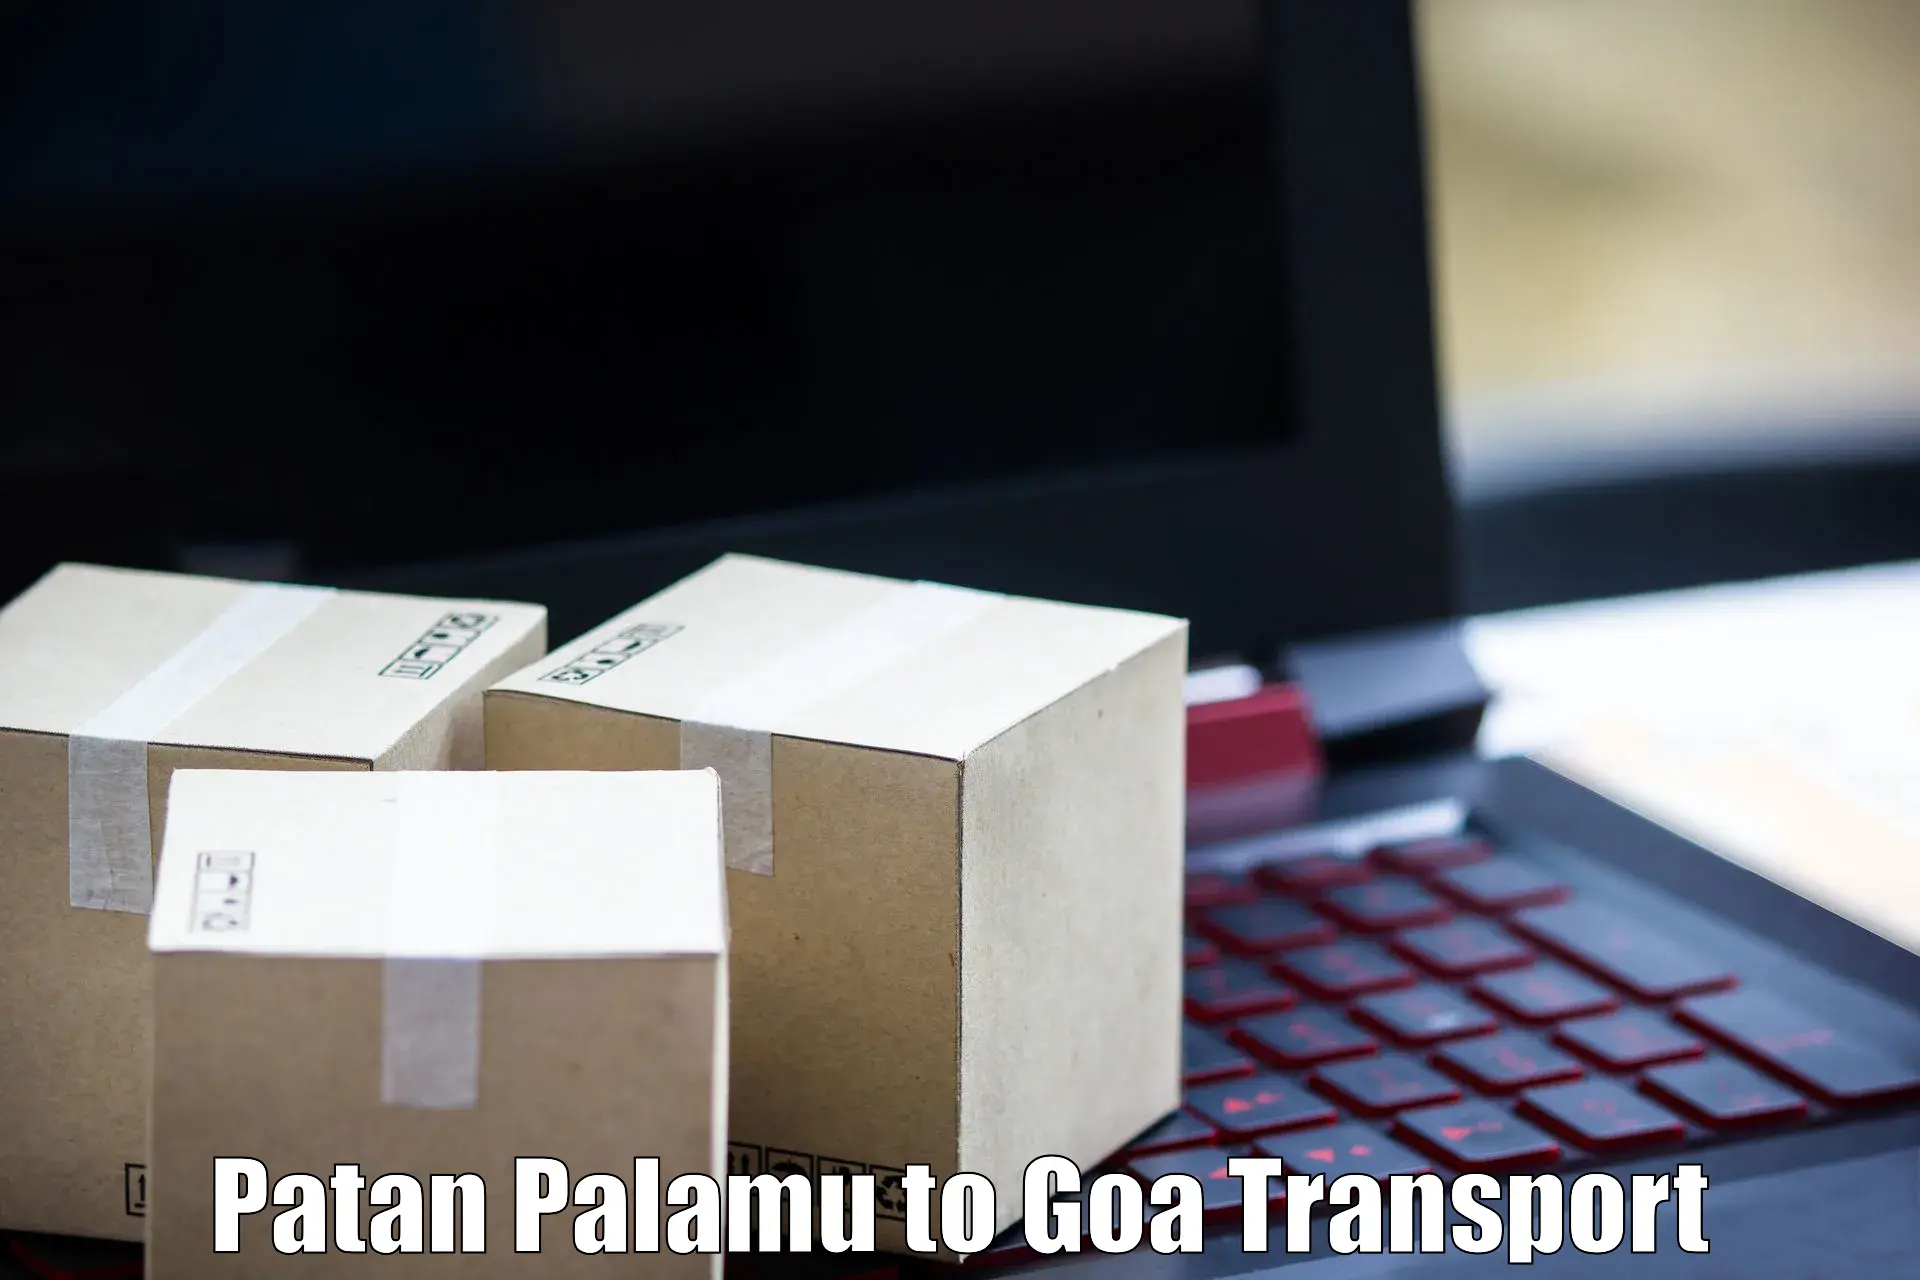 Transport services Patan Palamu to Goa University